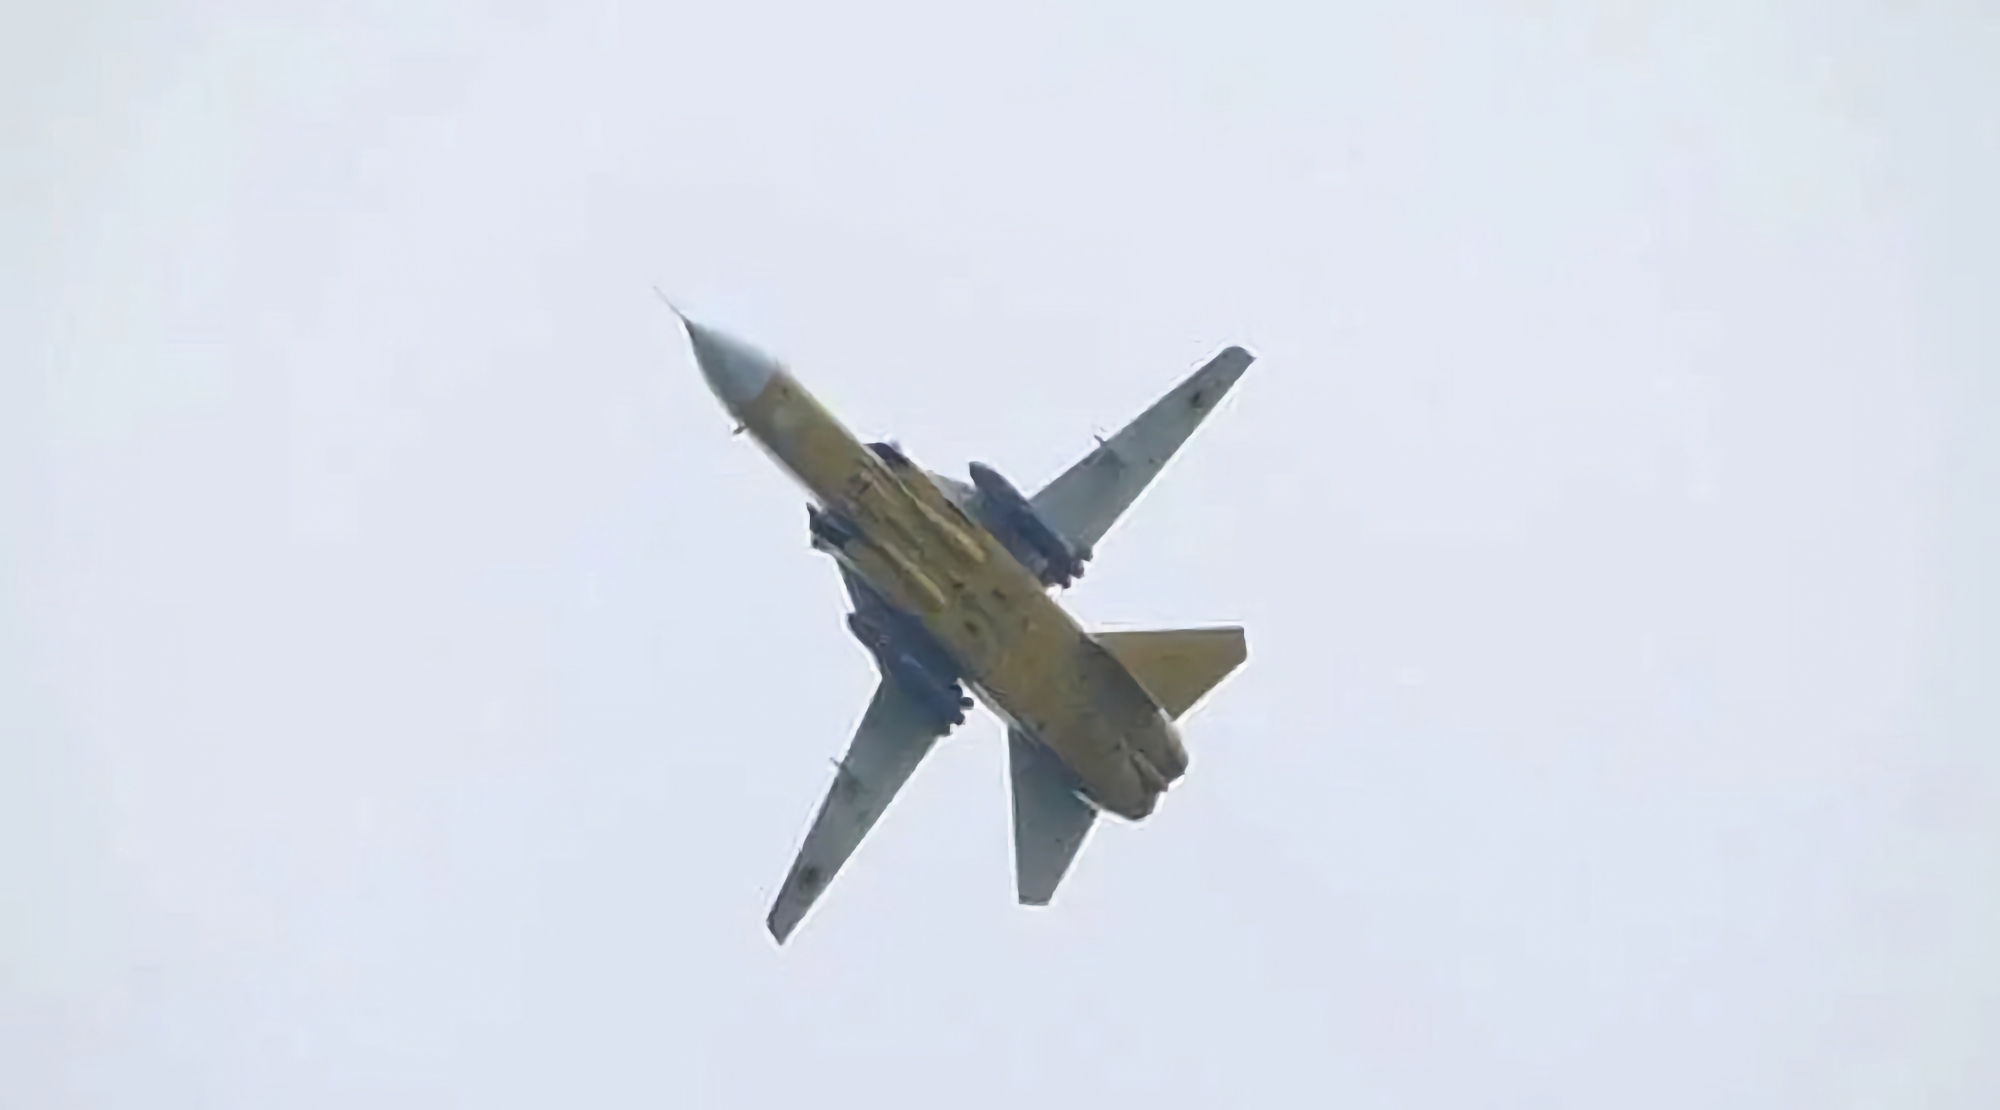 Ukraińskie samoloty szturmowe Su-24M z pociskami Storm Shadow pojawiają się na wideo